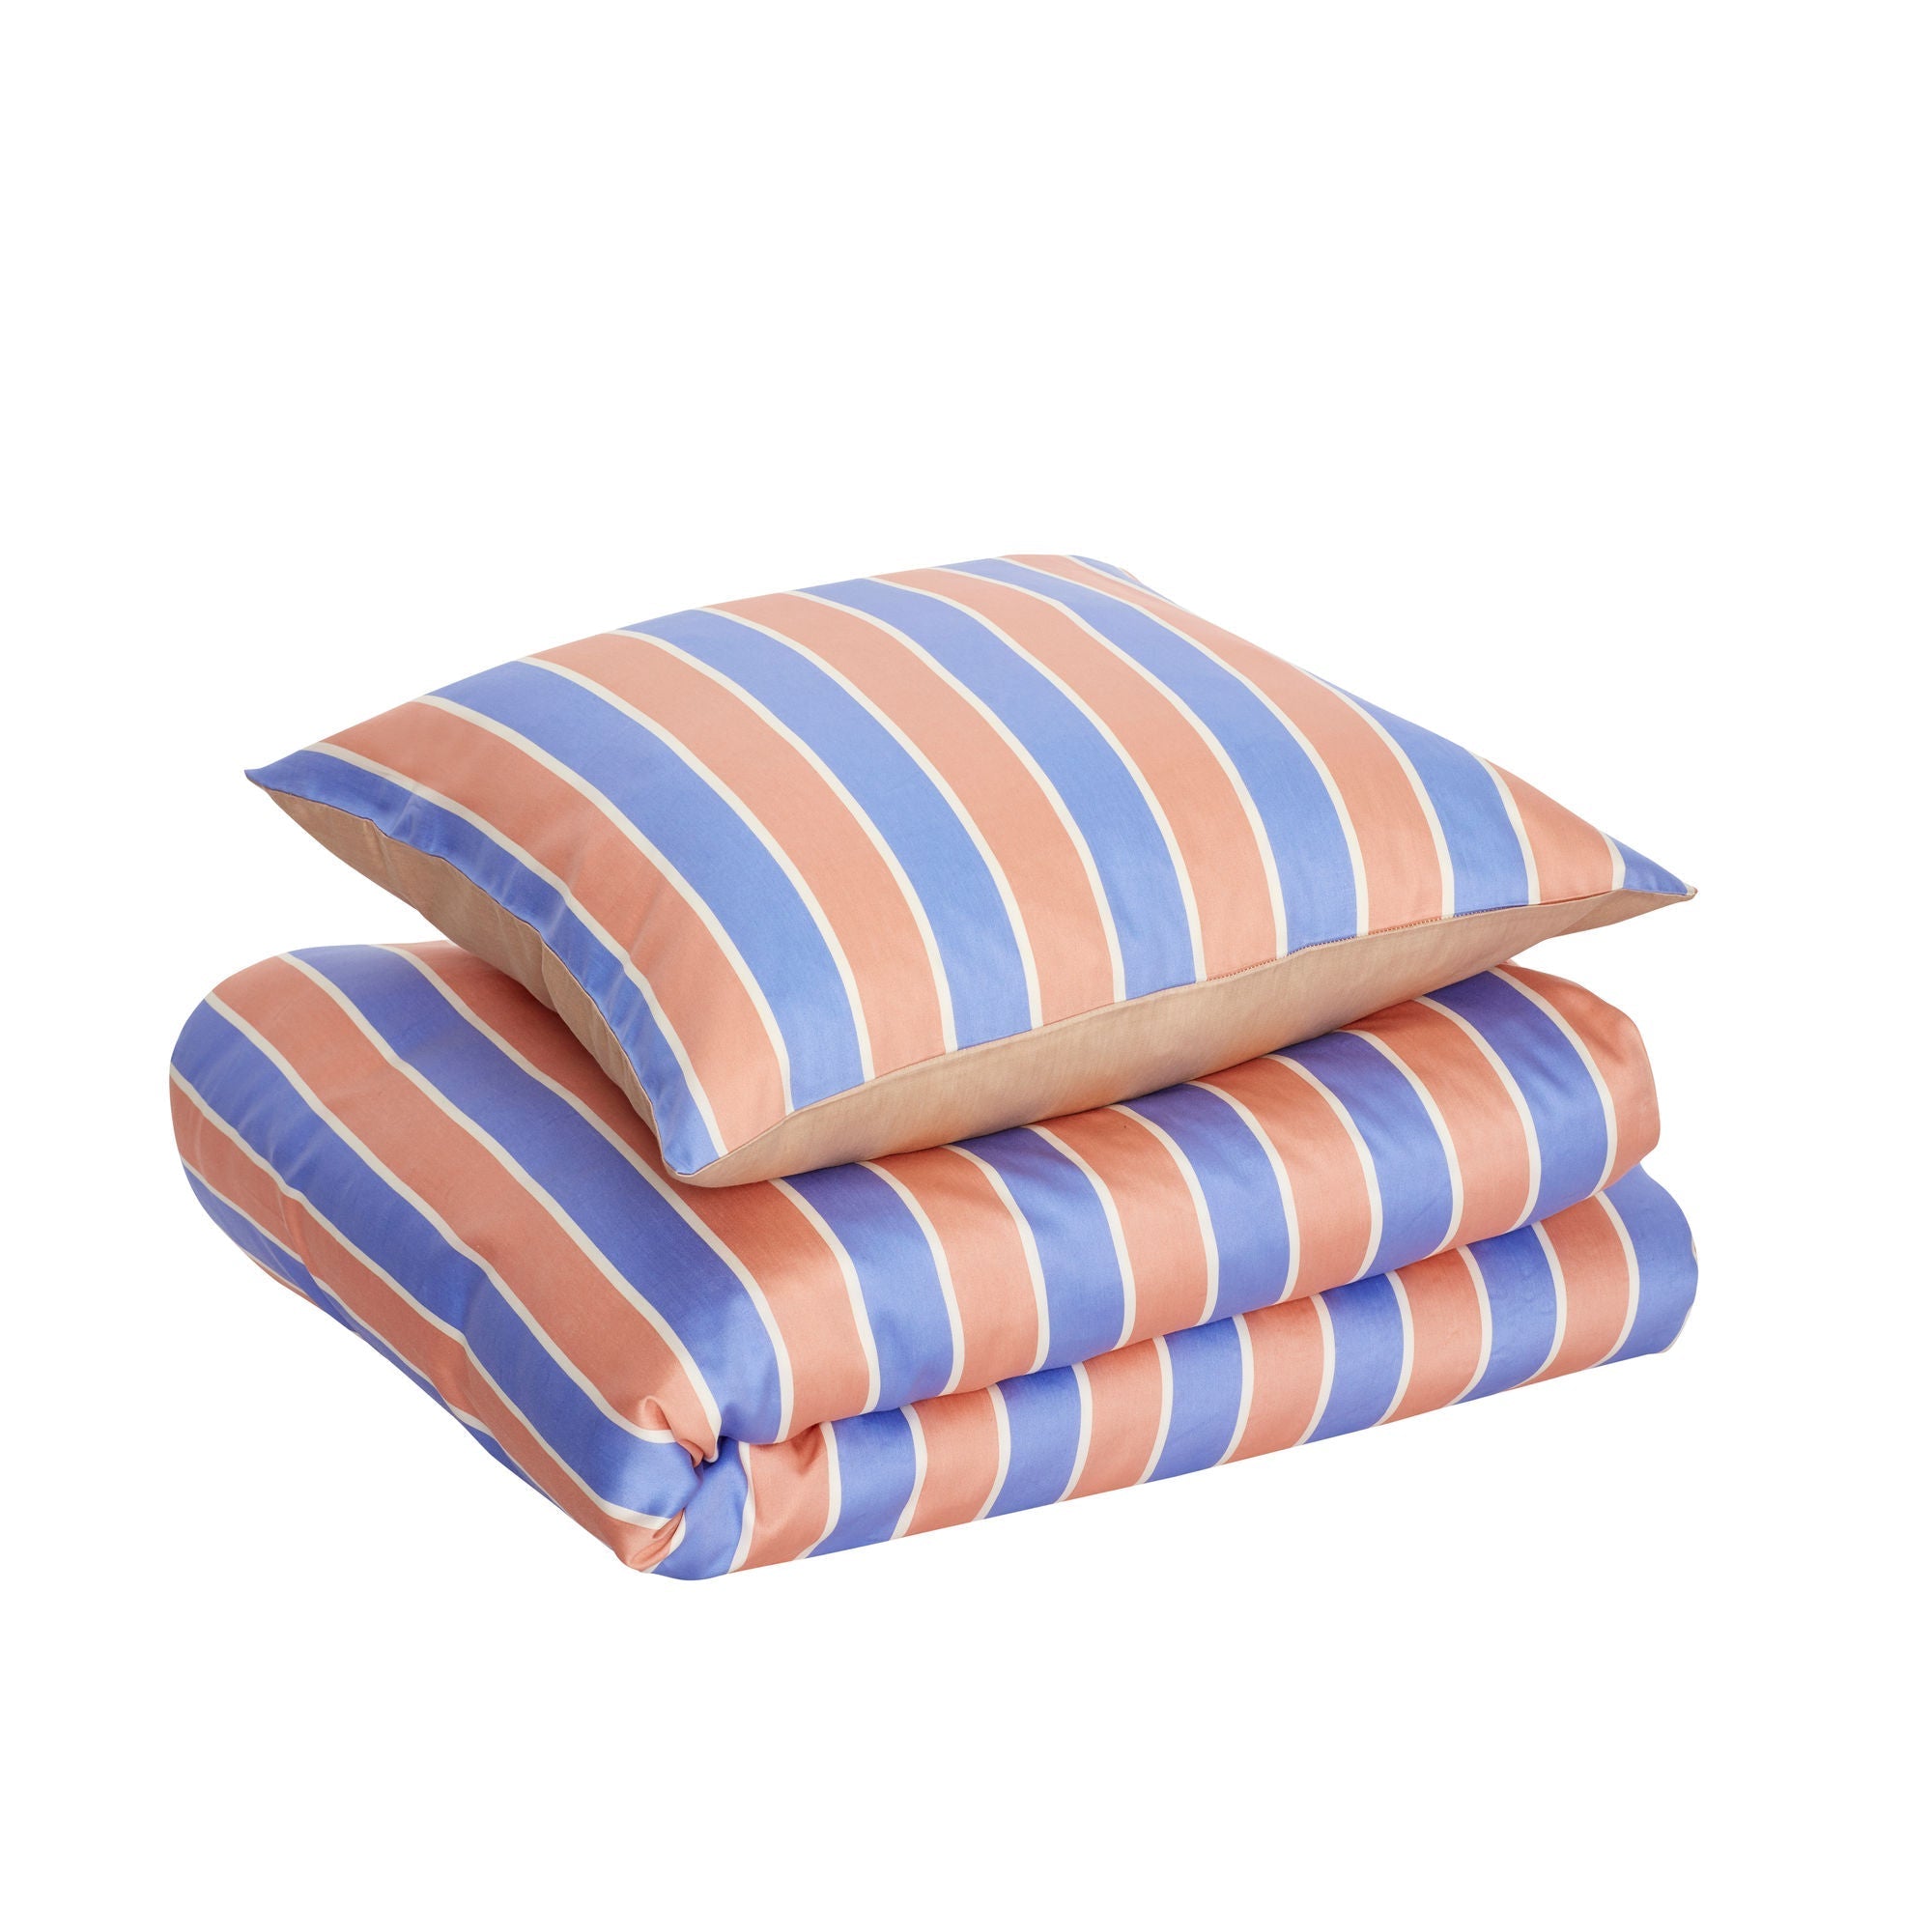 Hübsch consuelo lino de cama 60x63 140x200 azul/naranja